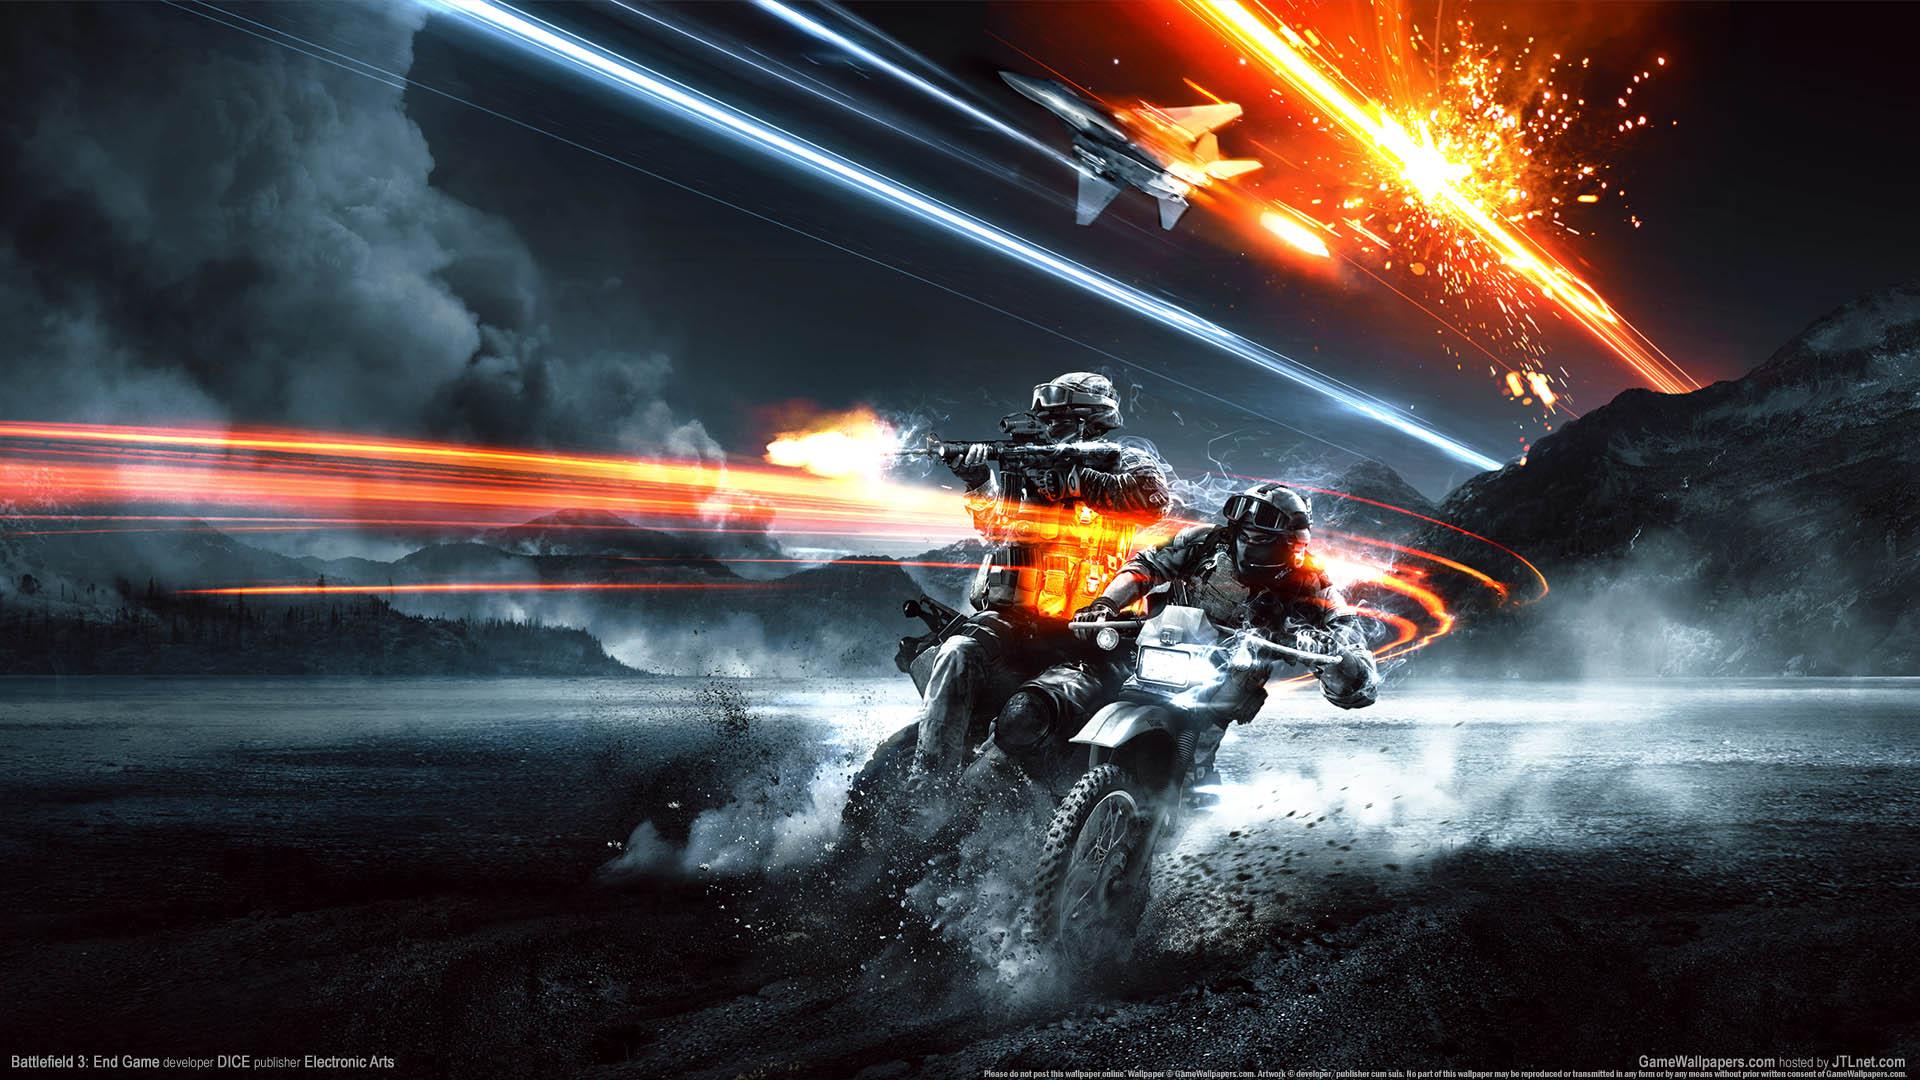 Battlefield 3: End Game fond d'cran 01 1920x1080